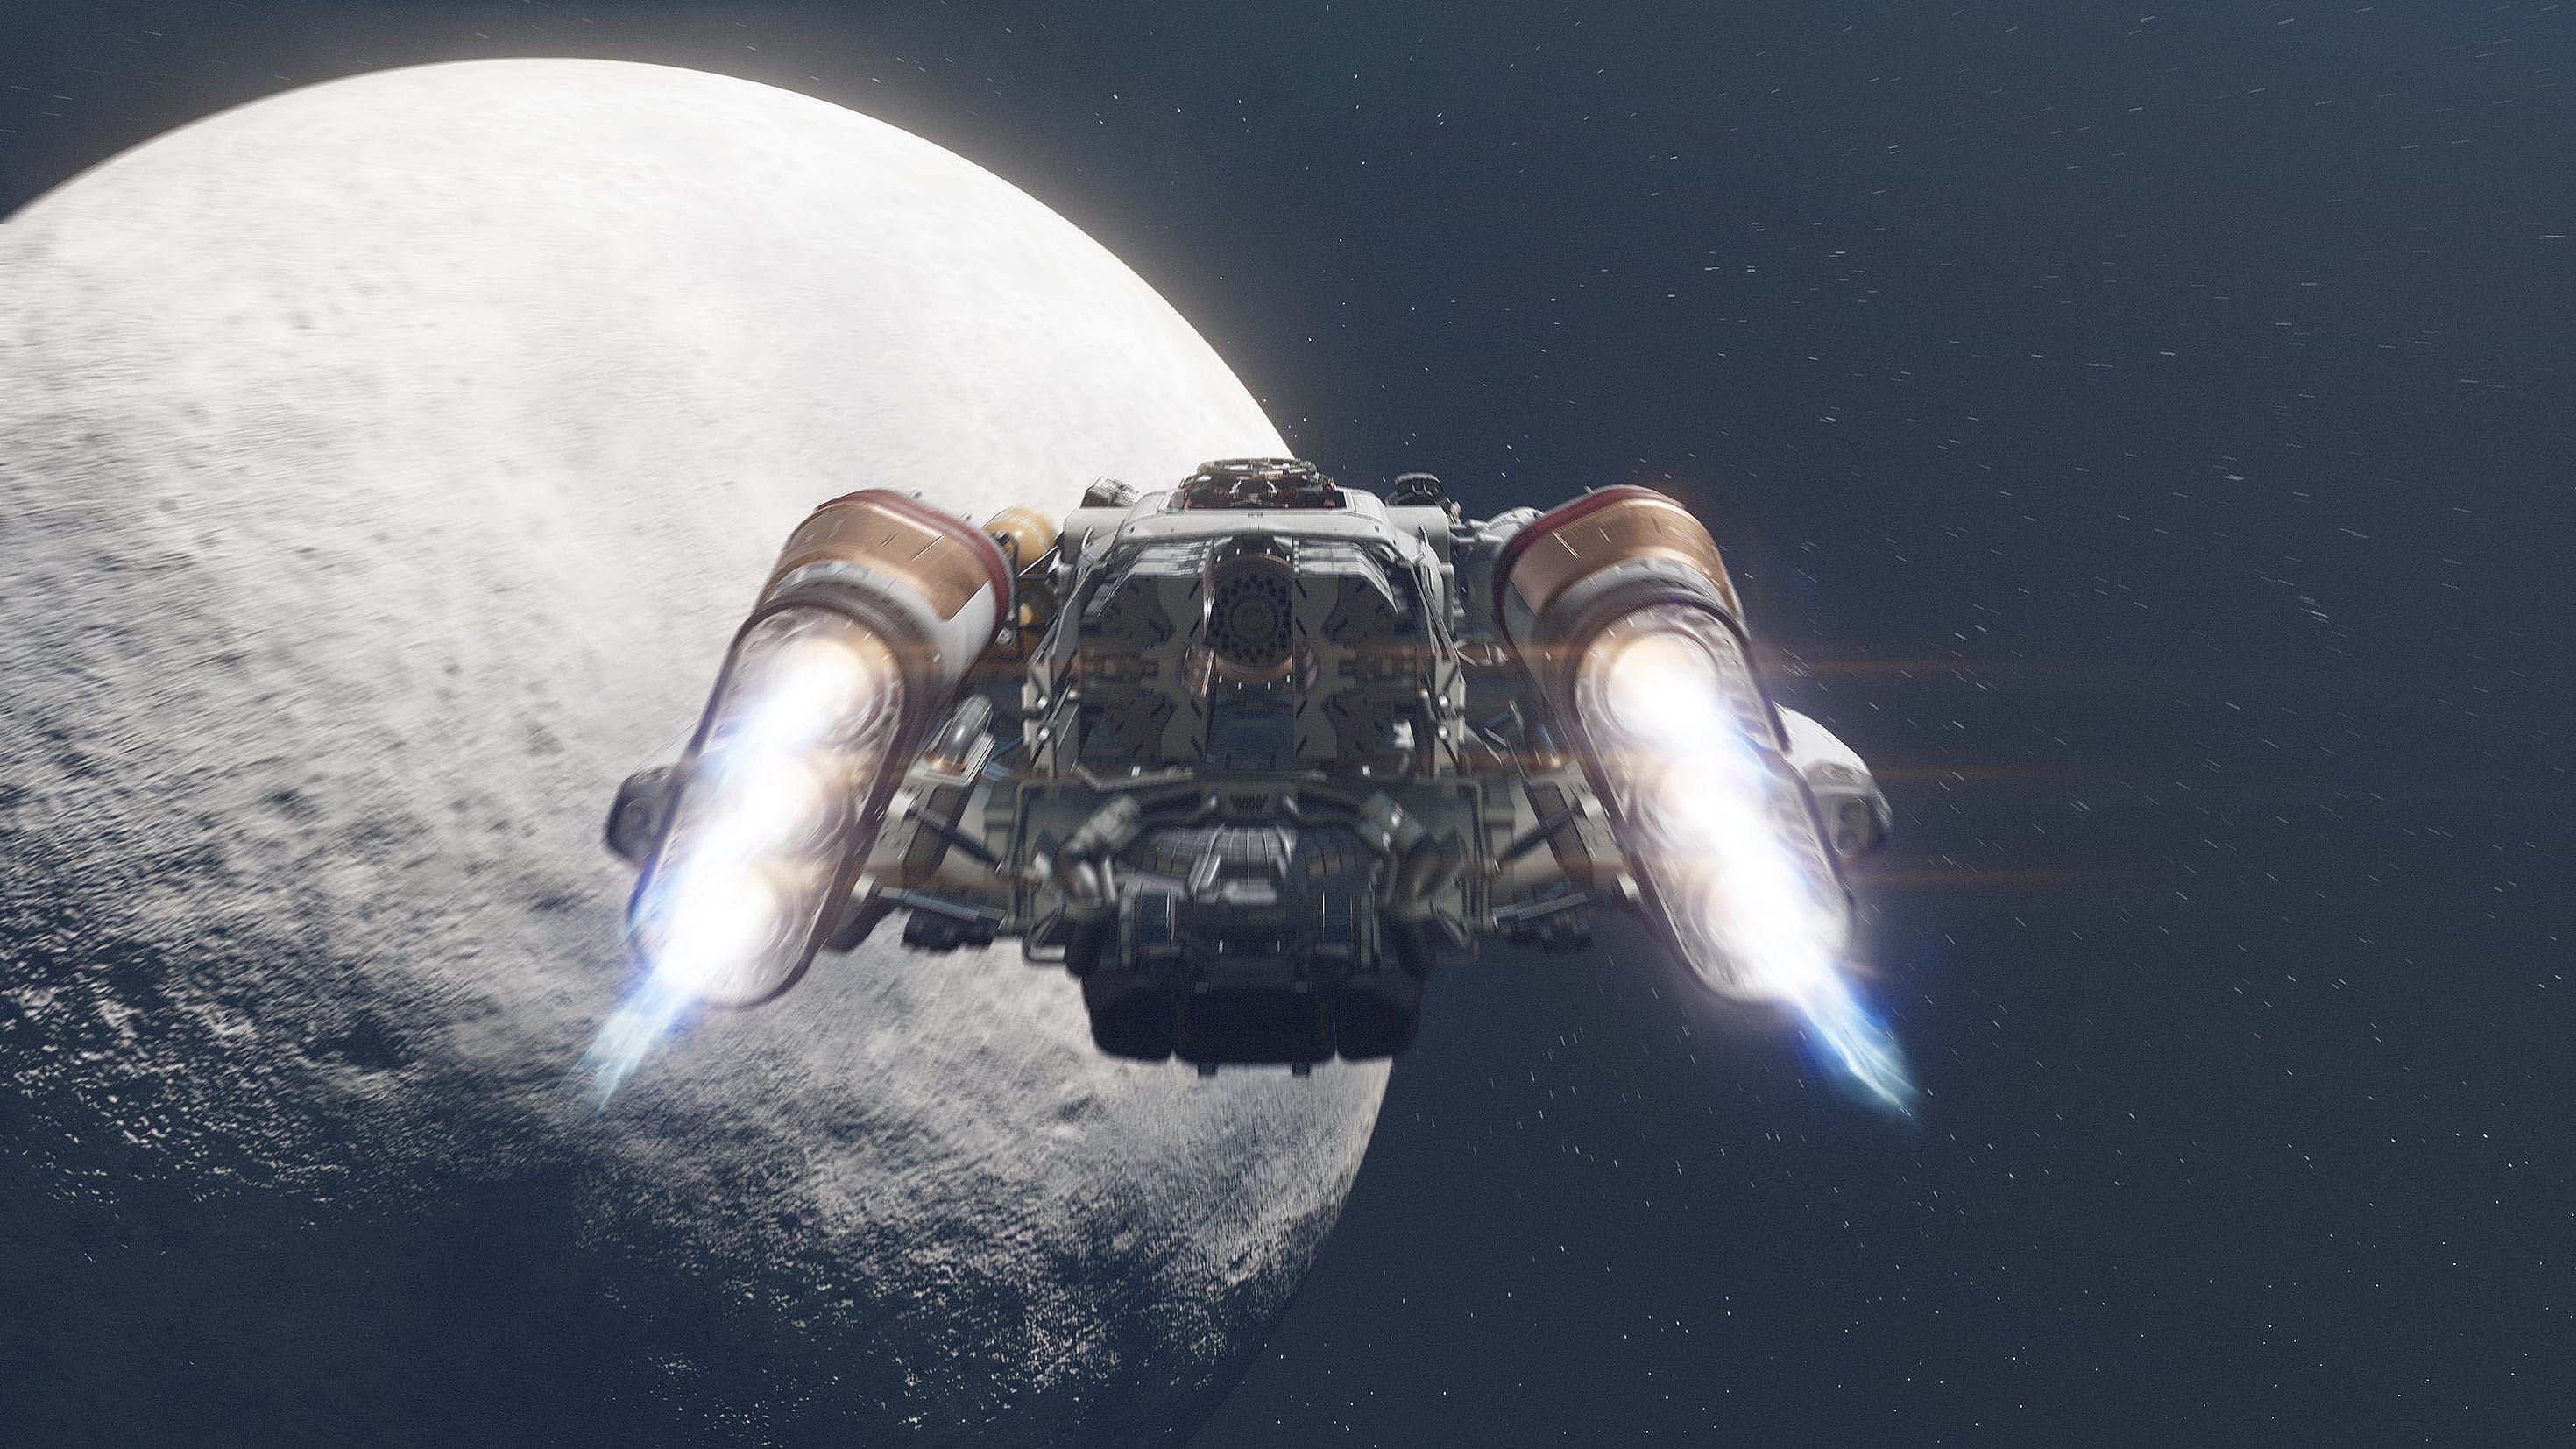 Starfield: Schiff in der Nähe eines Mondes.